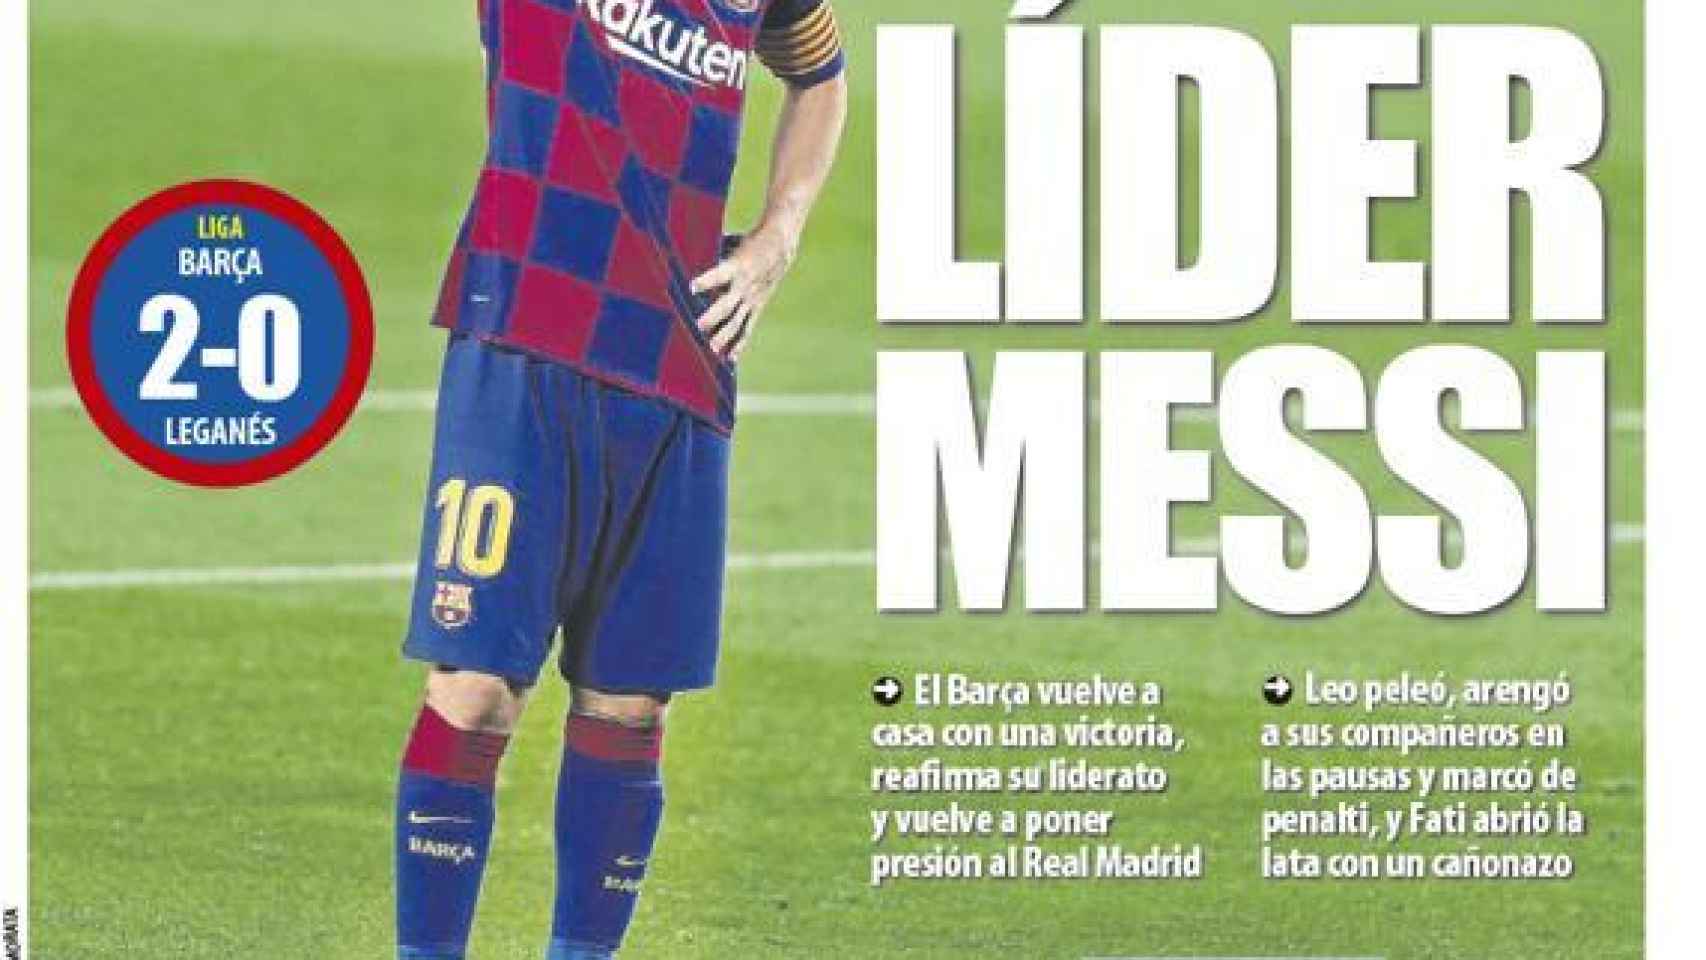 La portada del diario Mundo Deportivo (17/06/2020)